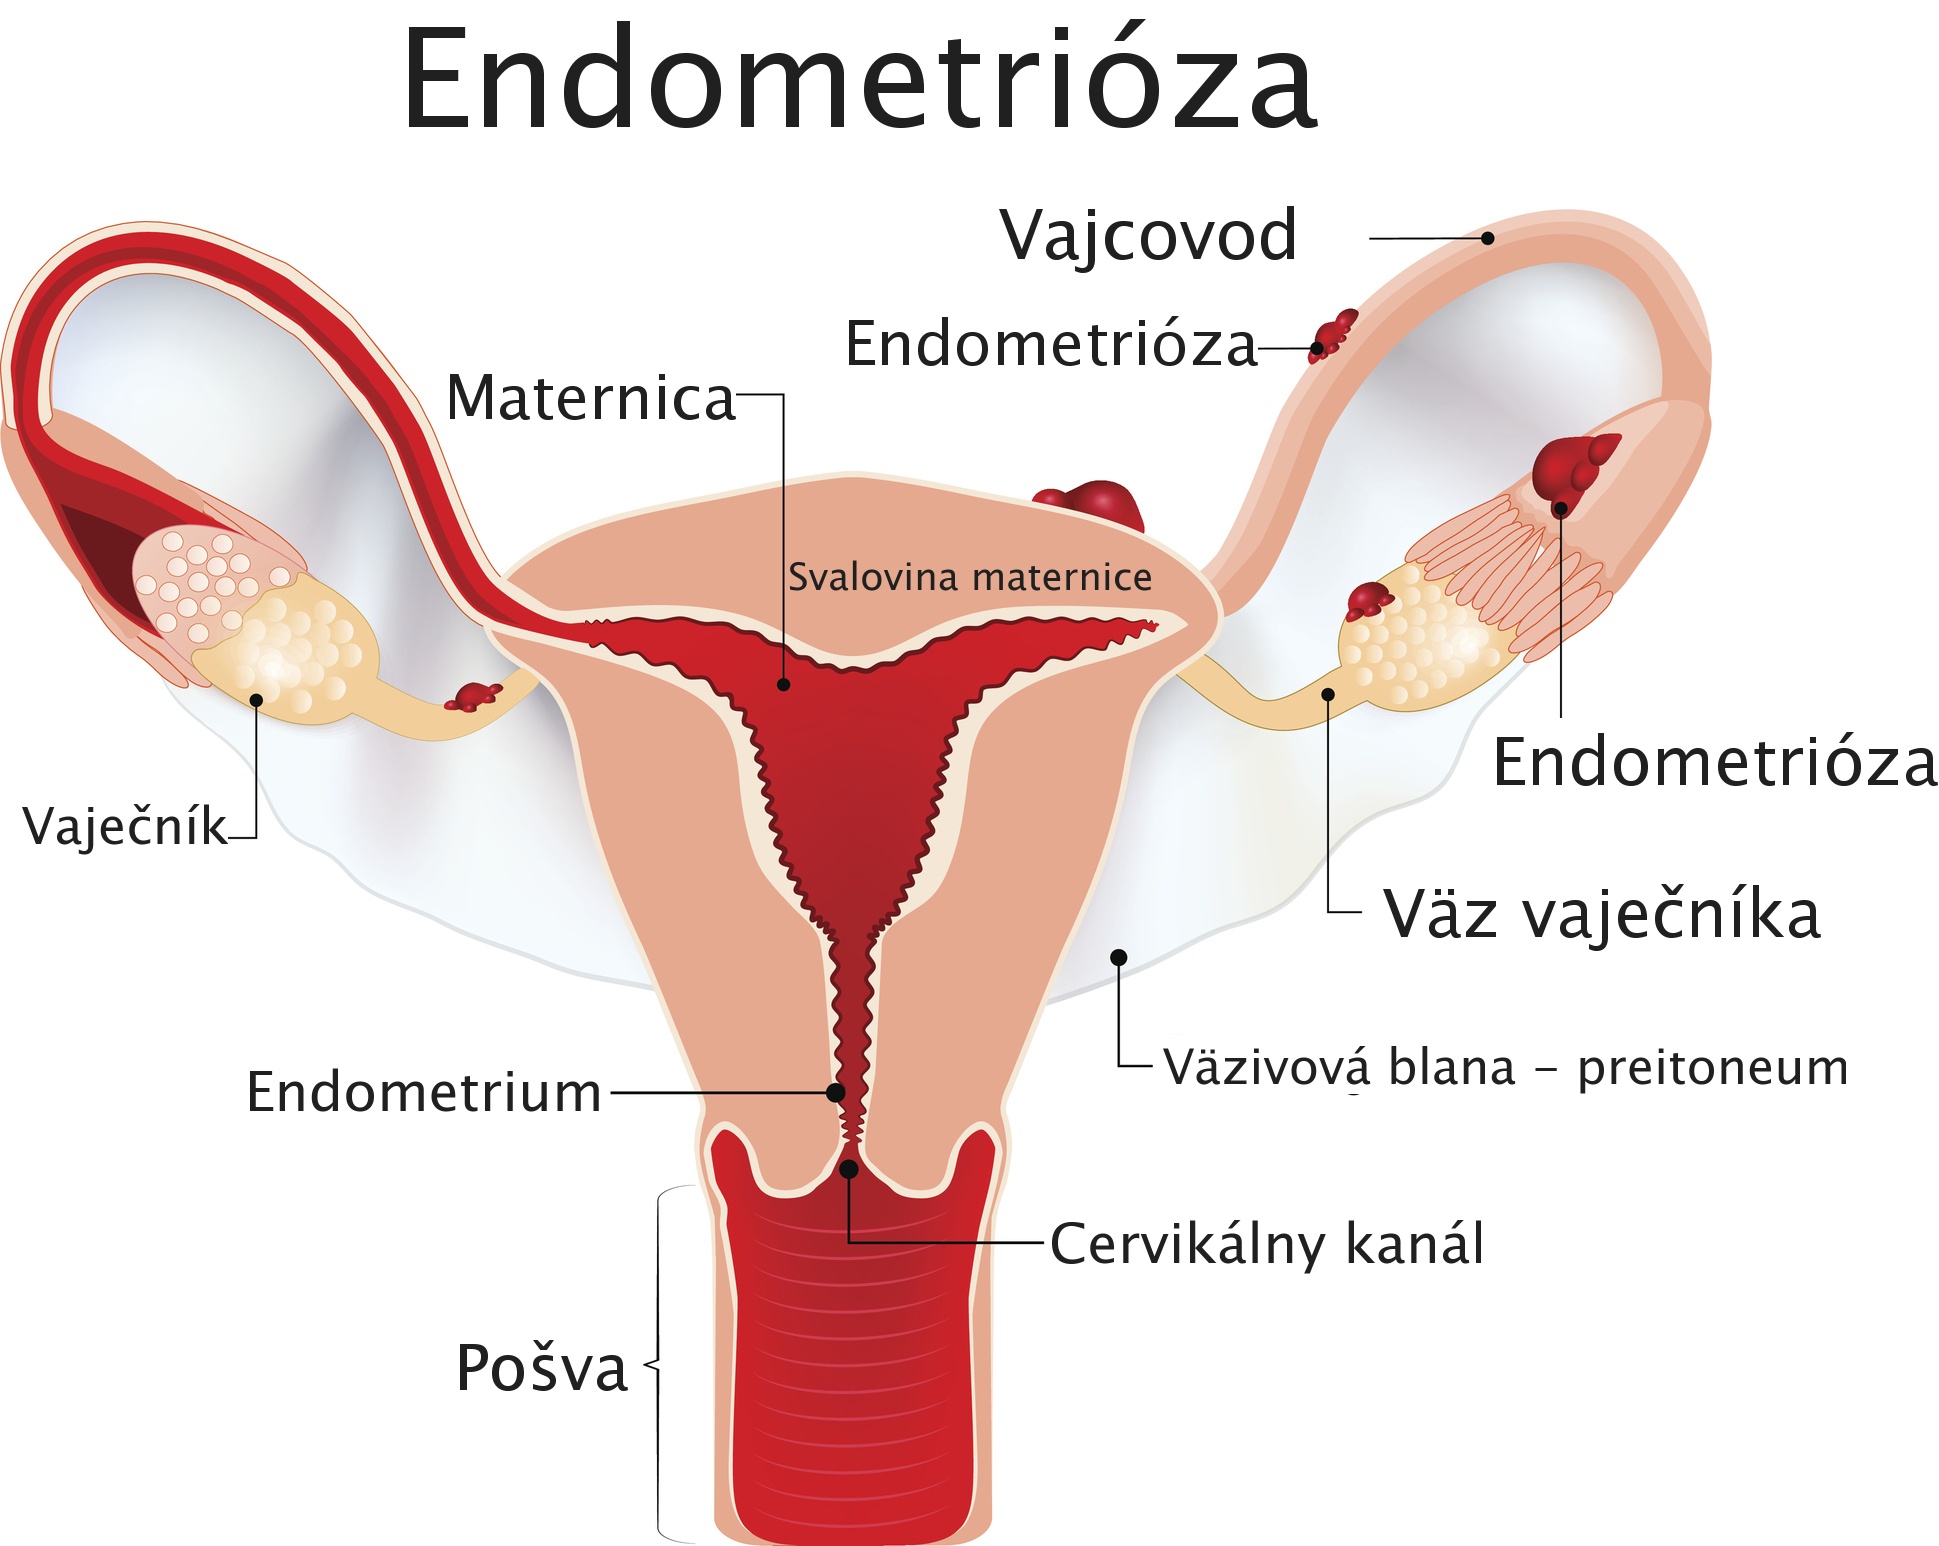 Endometrióza - model maternice s popisom